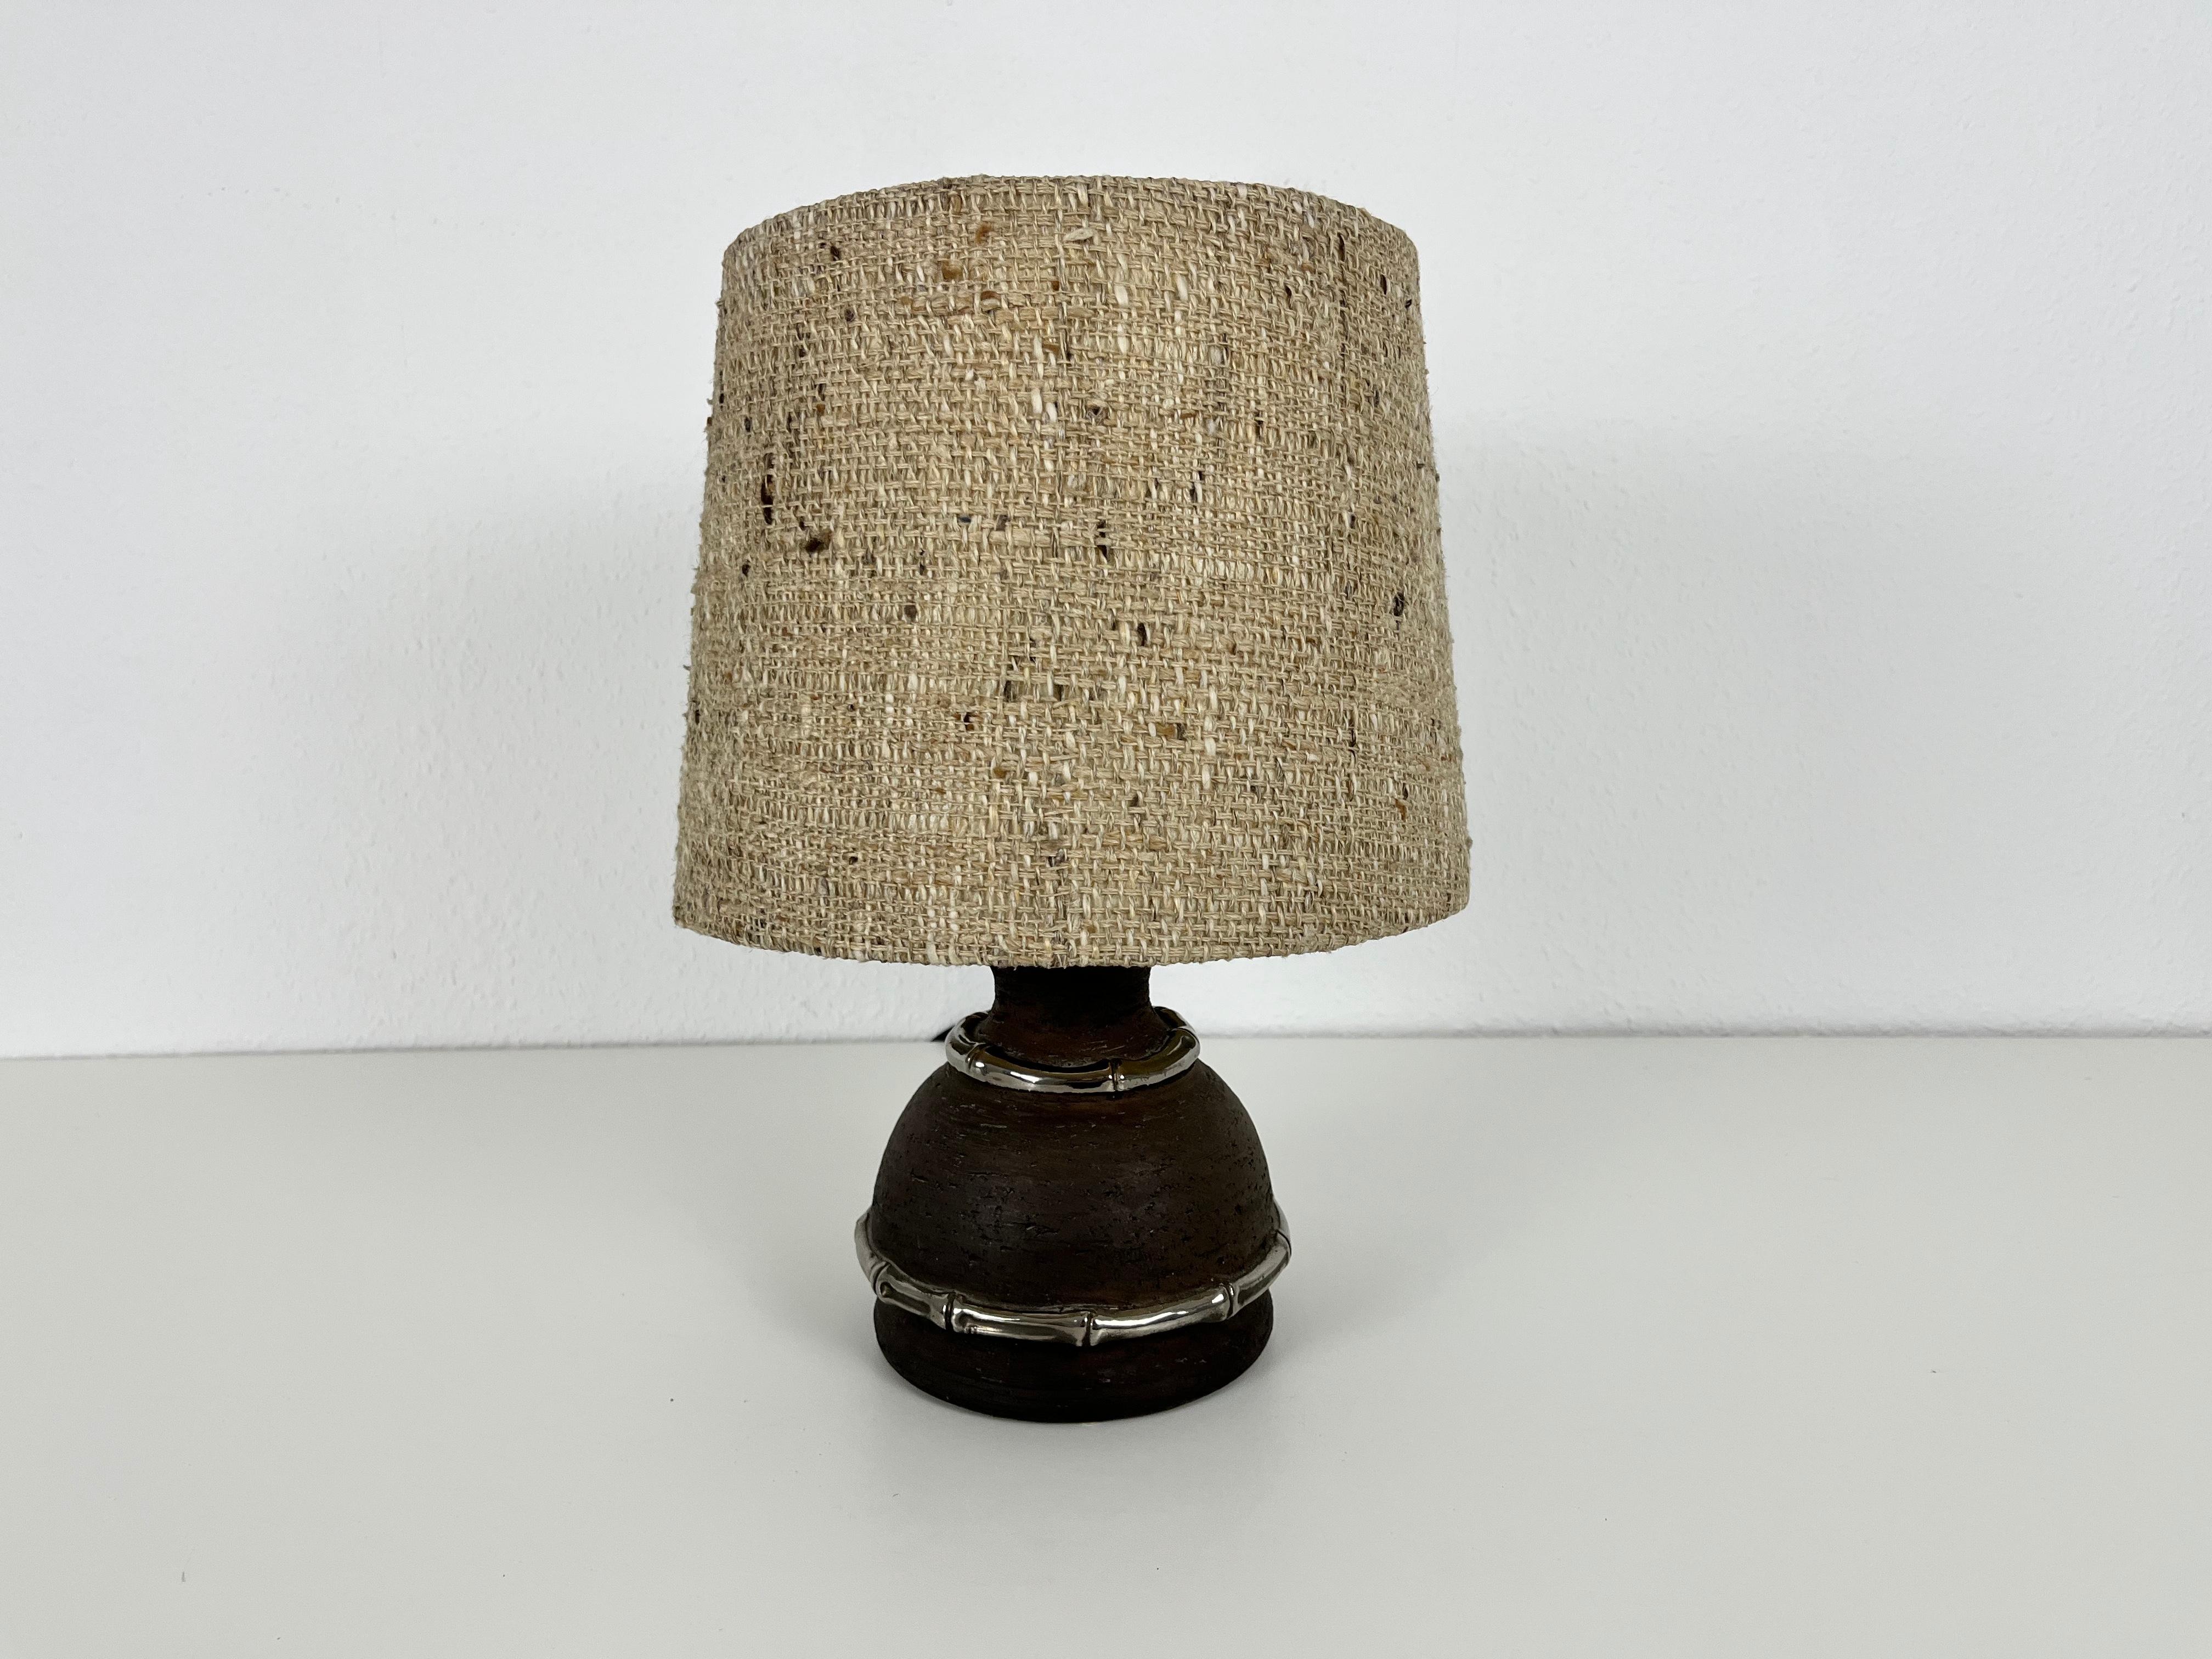 Eine schöne große Tischlampe aus den 1960er Jahren. Der Sockel ist aus brauner Keramik gefertigt. Der Lampenschirm hat eine beige Farbe. Die Tischlampe hat ein schönes italienisches Design.

Die Leuchte benötigt eine E27-Glühbirne. Guter